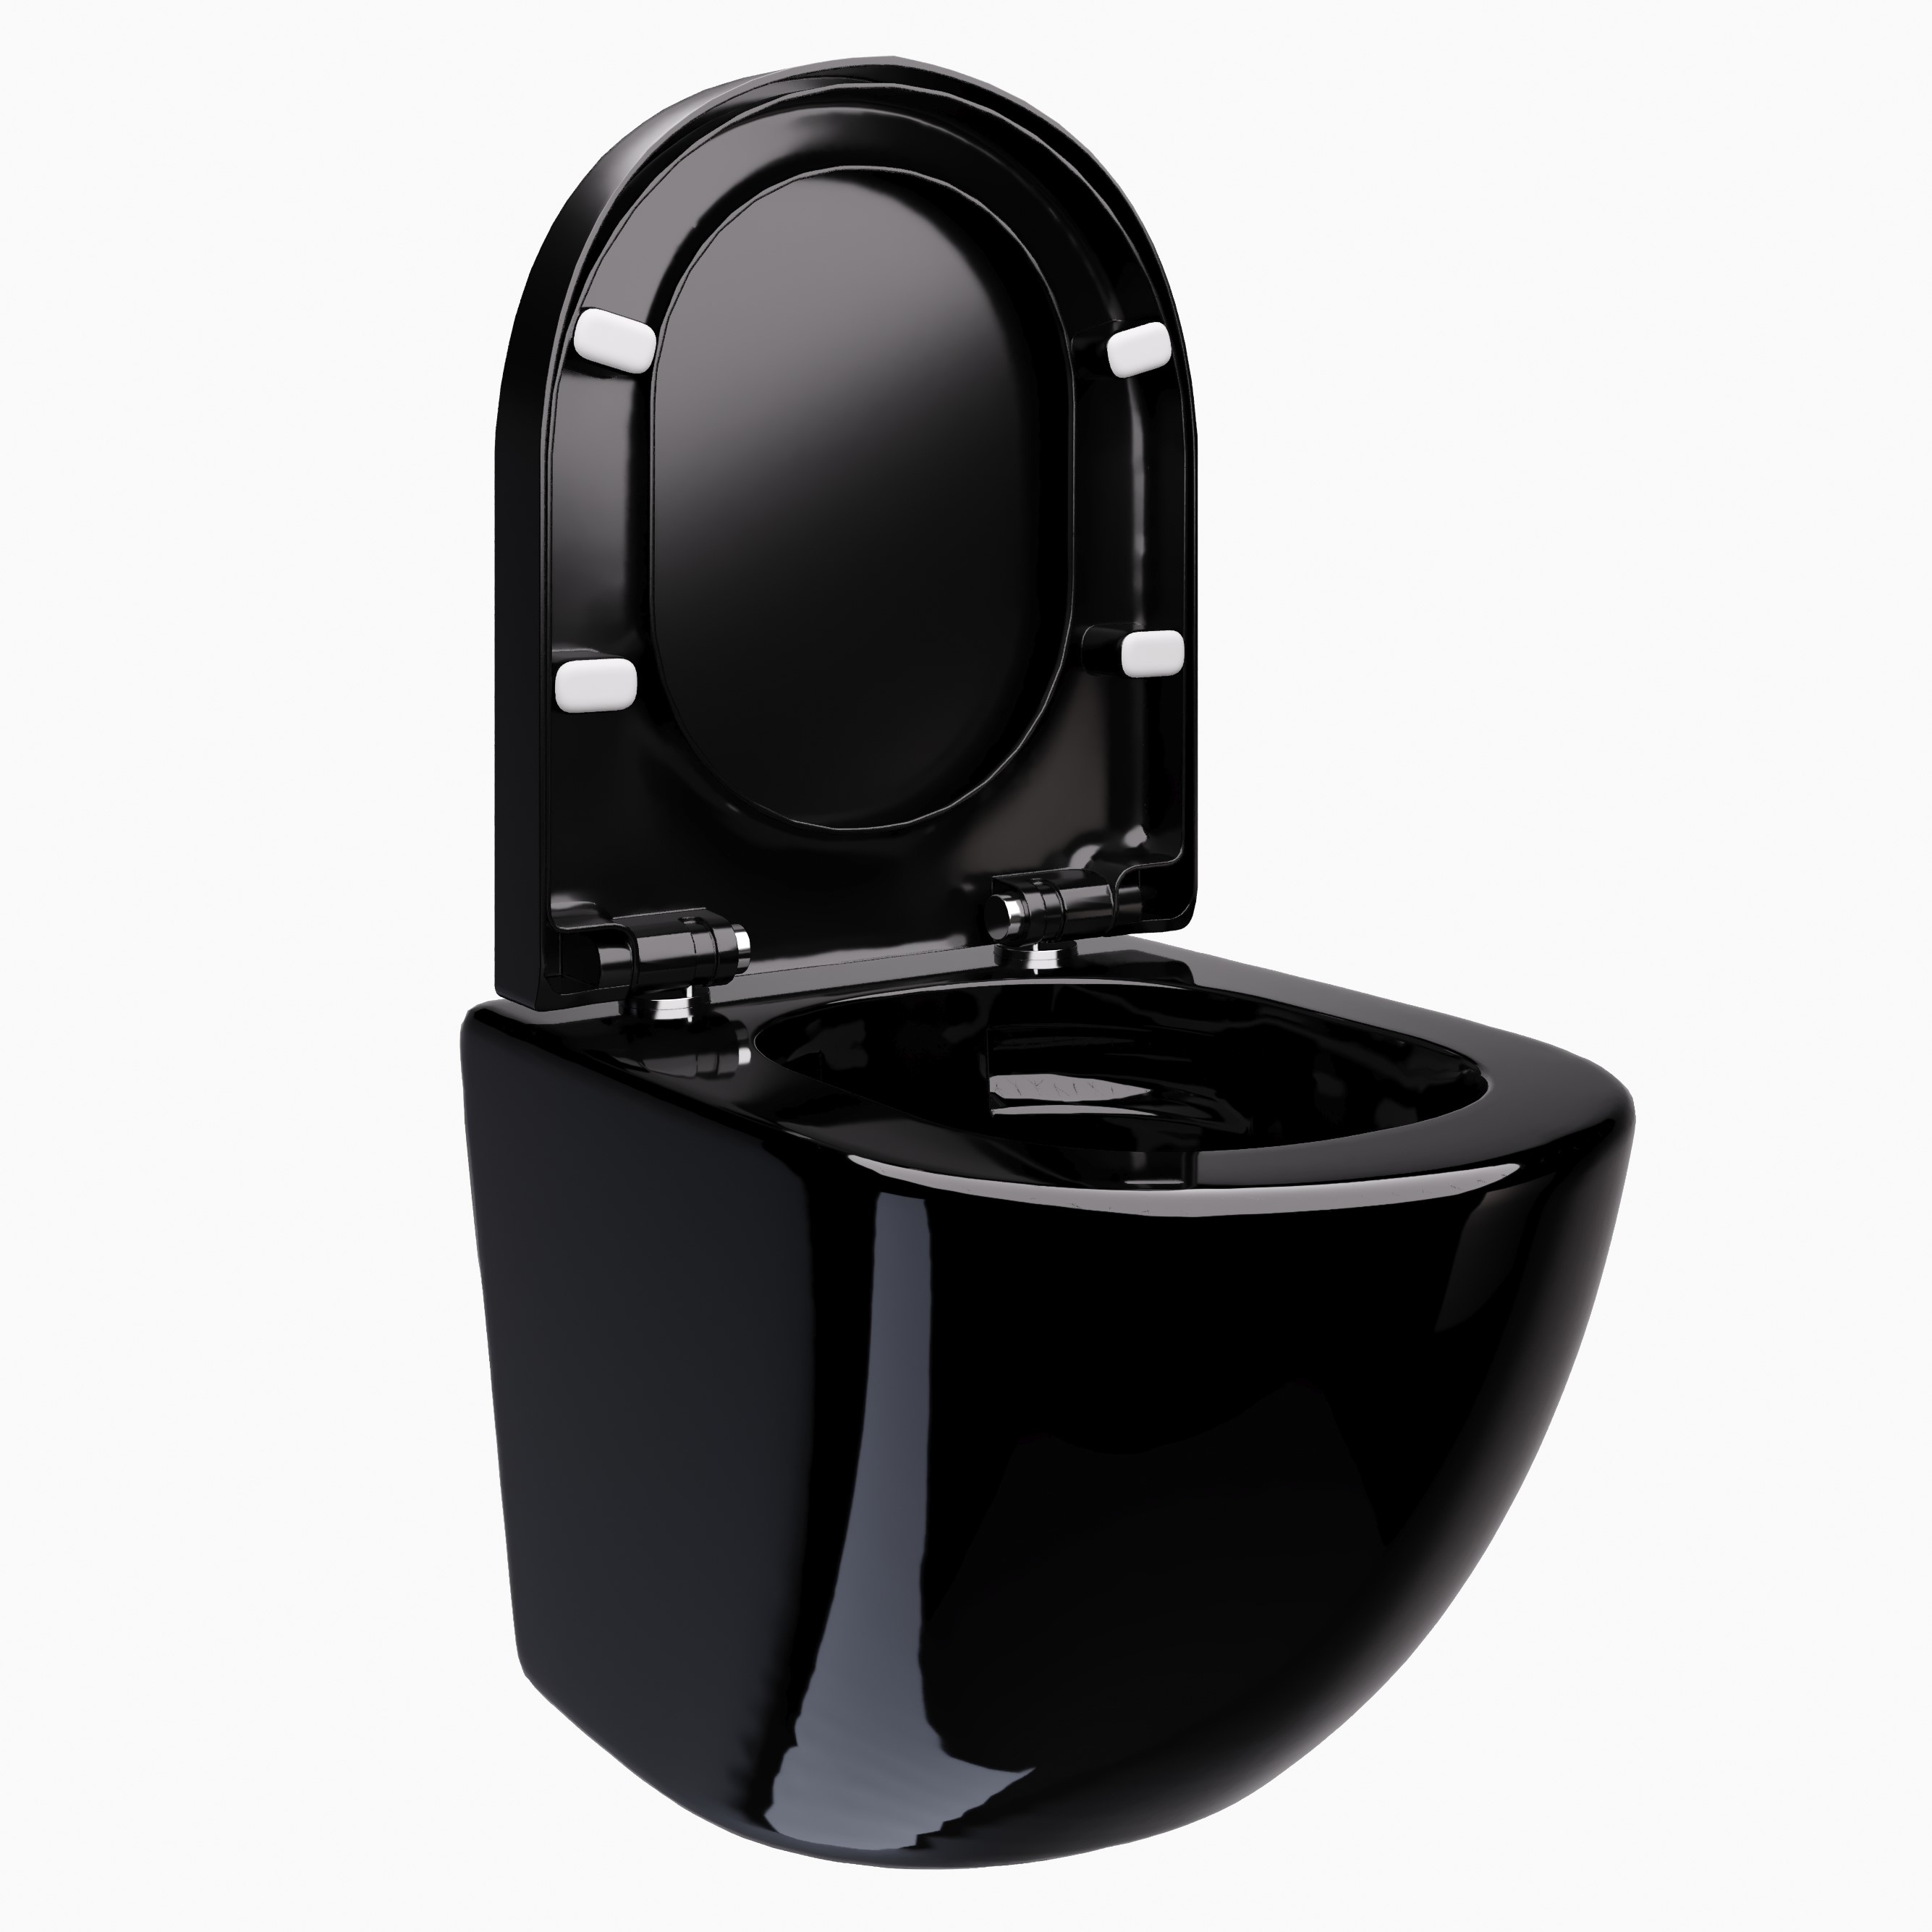 Toilette Hänge WC Spülrandlos inkl. WC Sitz mit Absenkautomatik SOFTCLOSE + abnehmbar Redonde in Schwarz